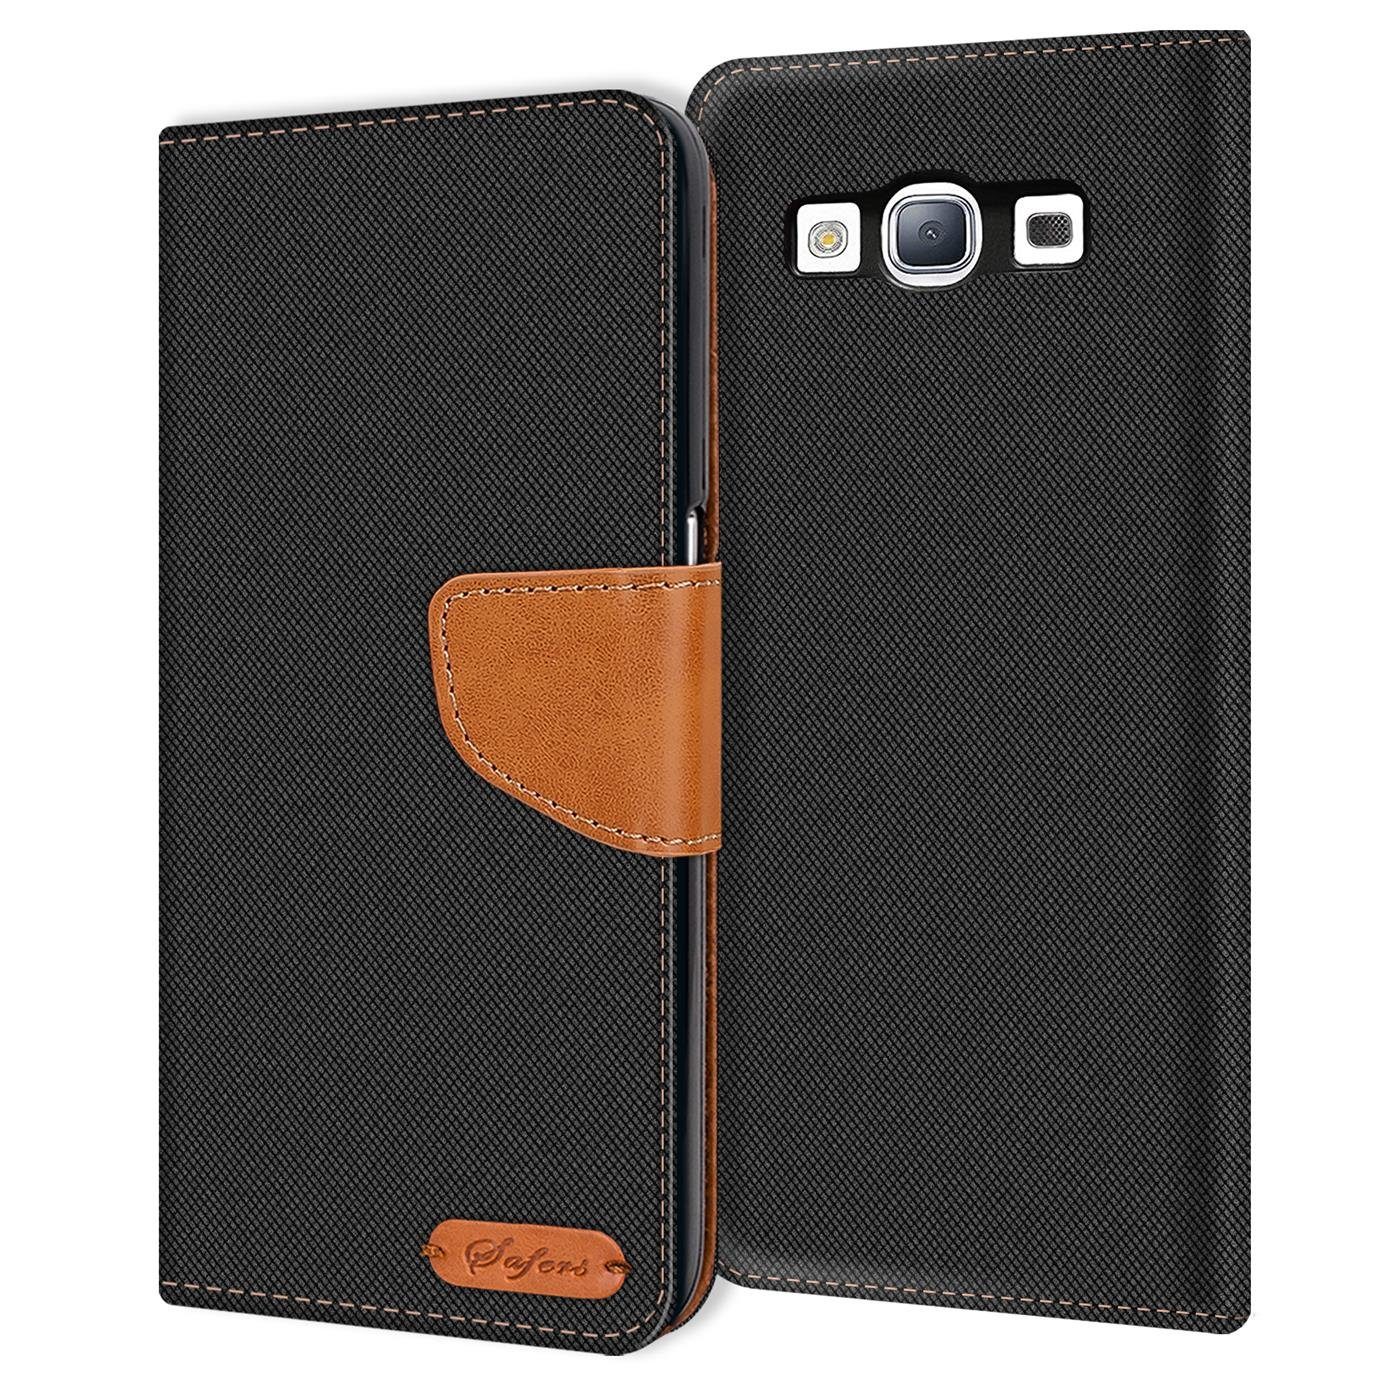 CoolGadget Handyhülle »Denim Schutzhülle Flip Case« für Samsung Galaxy S3 /  S3 Neo 4,8 Zoll, Book Cover Handy Tasche Hülle für Samsung S3 Klapphülle  online kaufen | OTTO